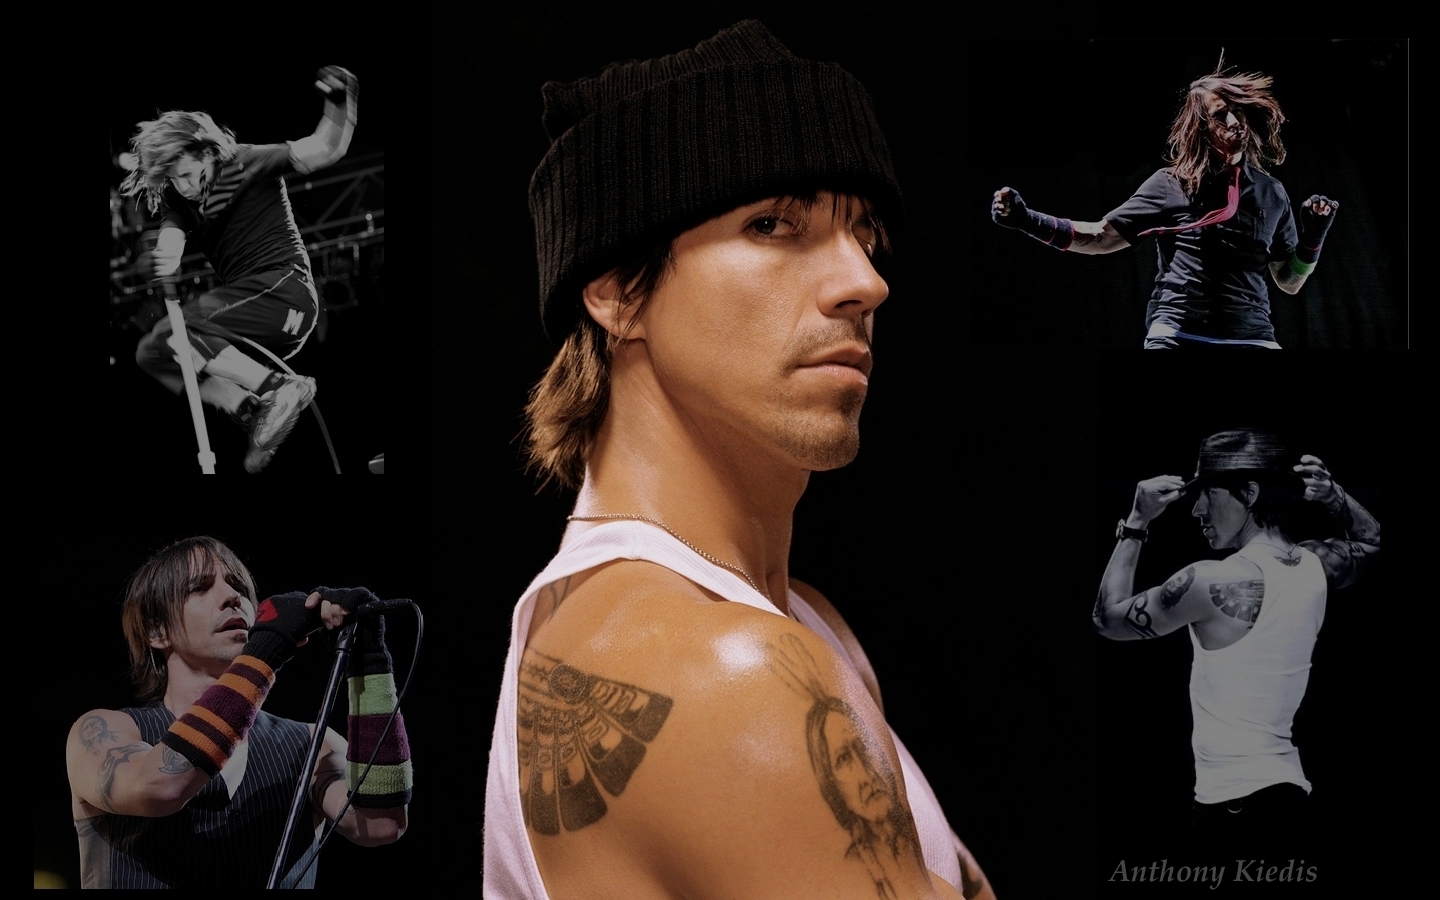 Anthony Kiedis Wallpaper   Anthony Kiedis Wallpaper 1440x900